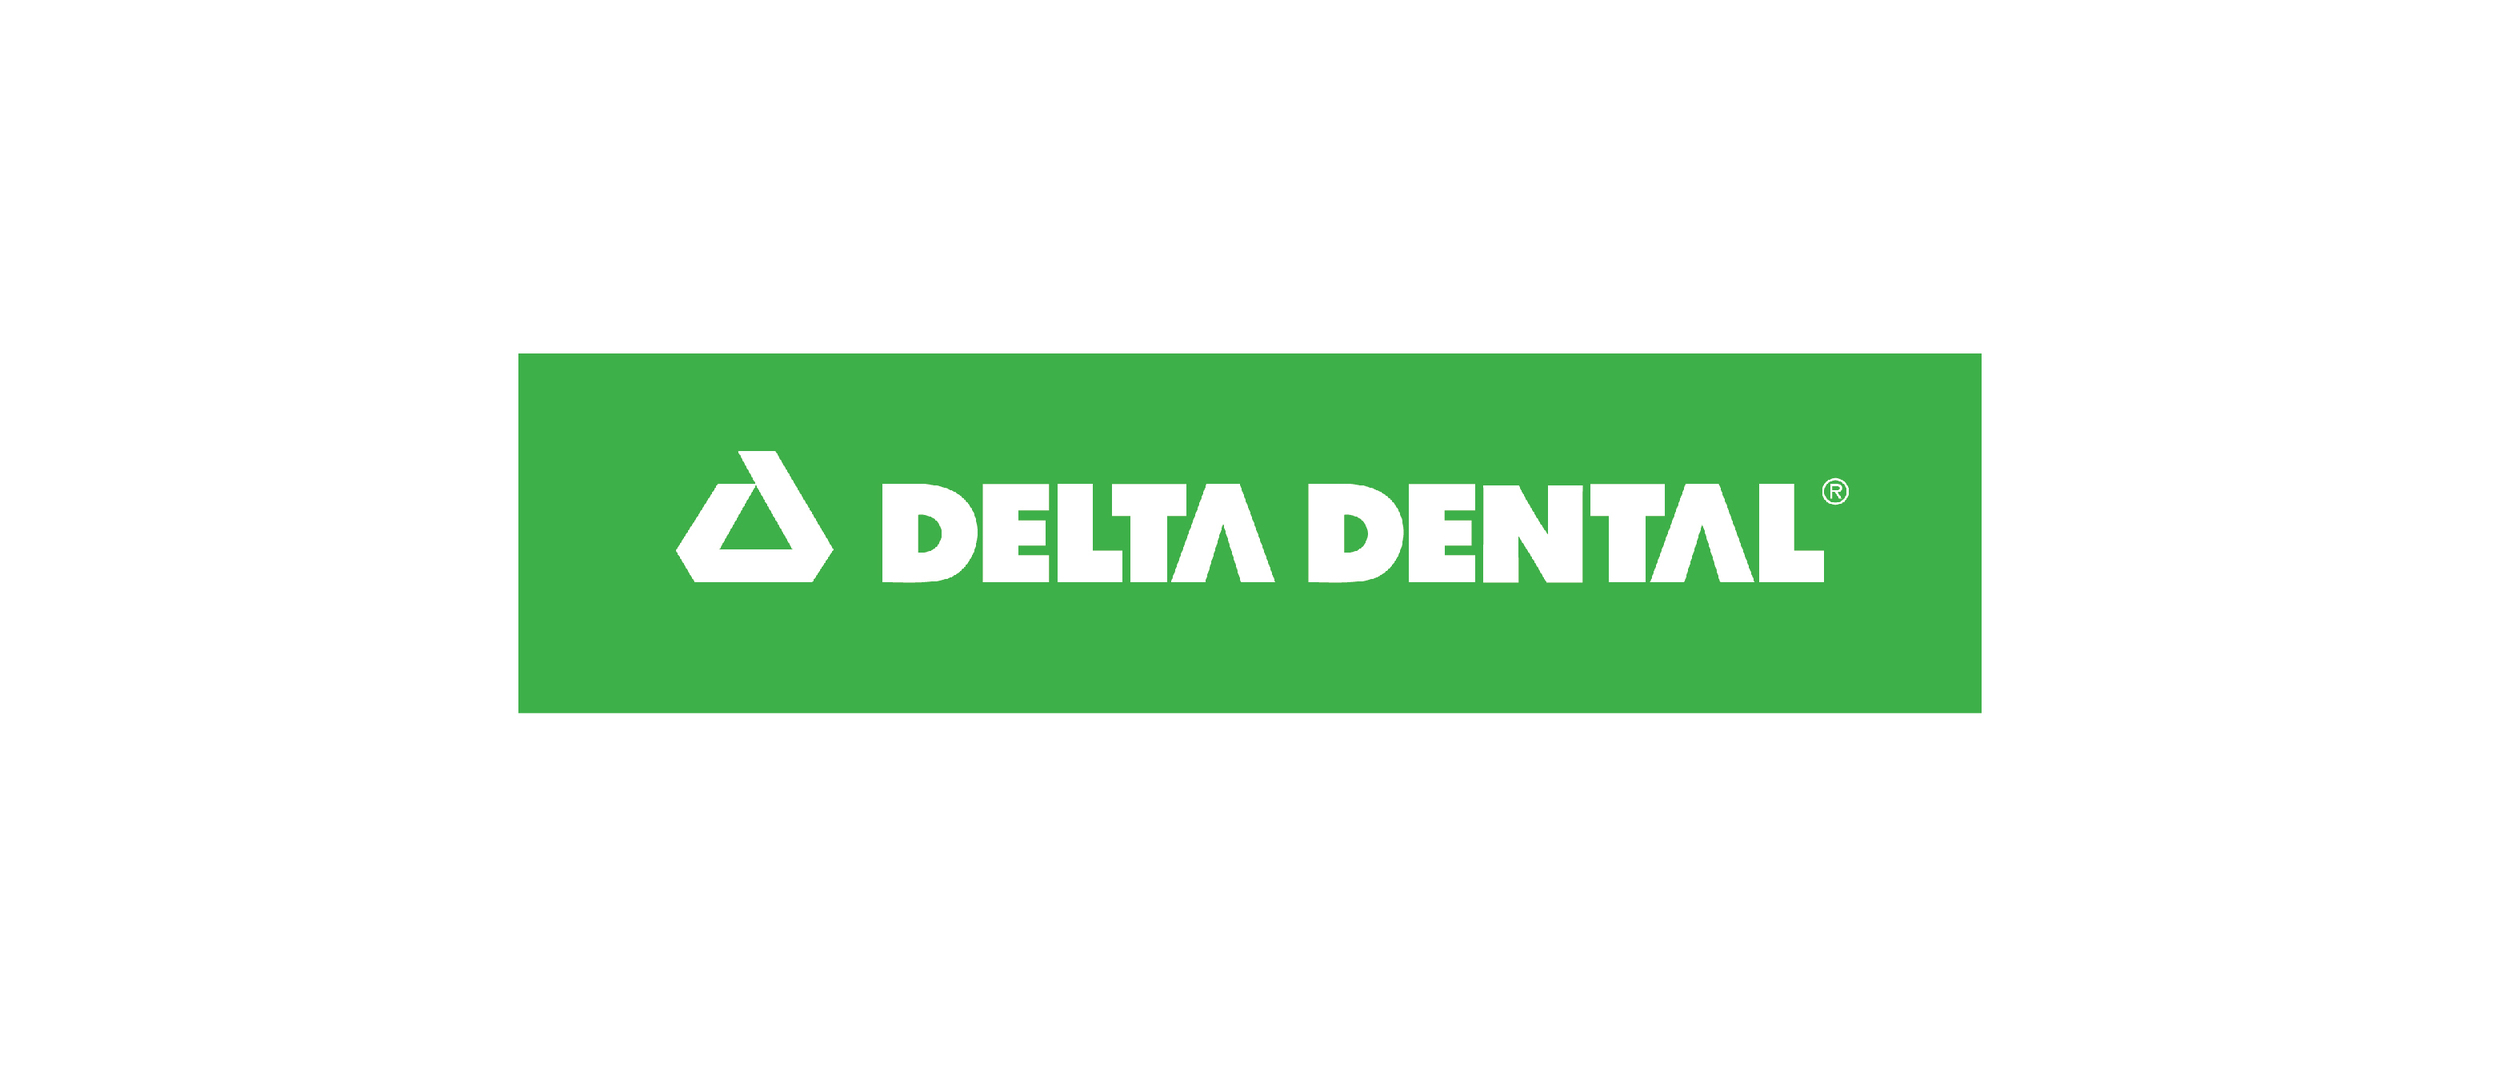 Ward_Family_Dentistry_Insurance_DeltaDental.jpg